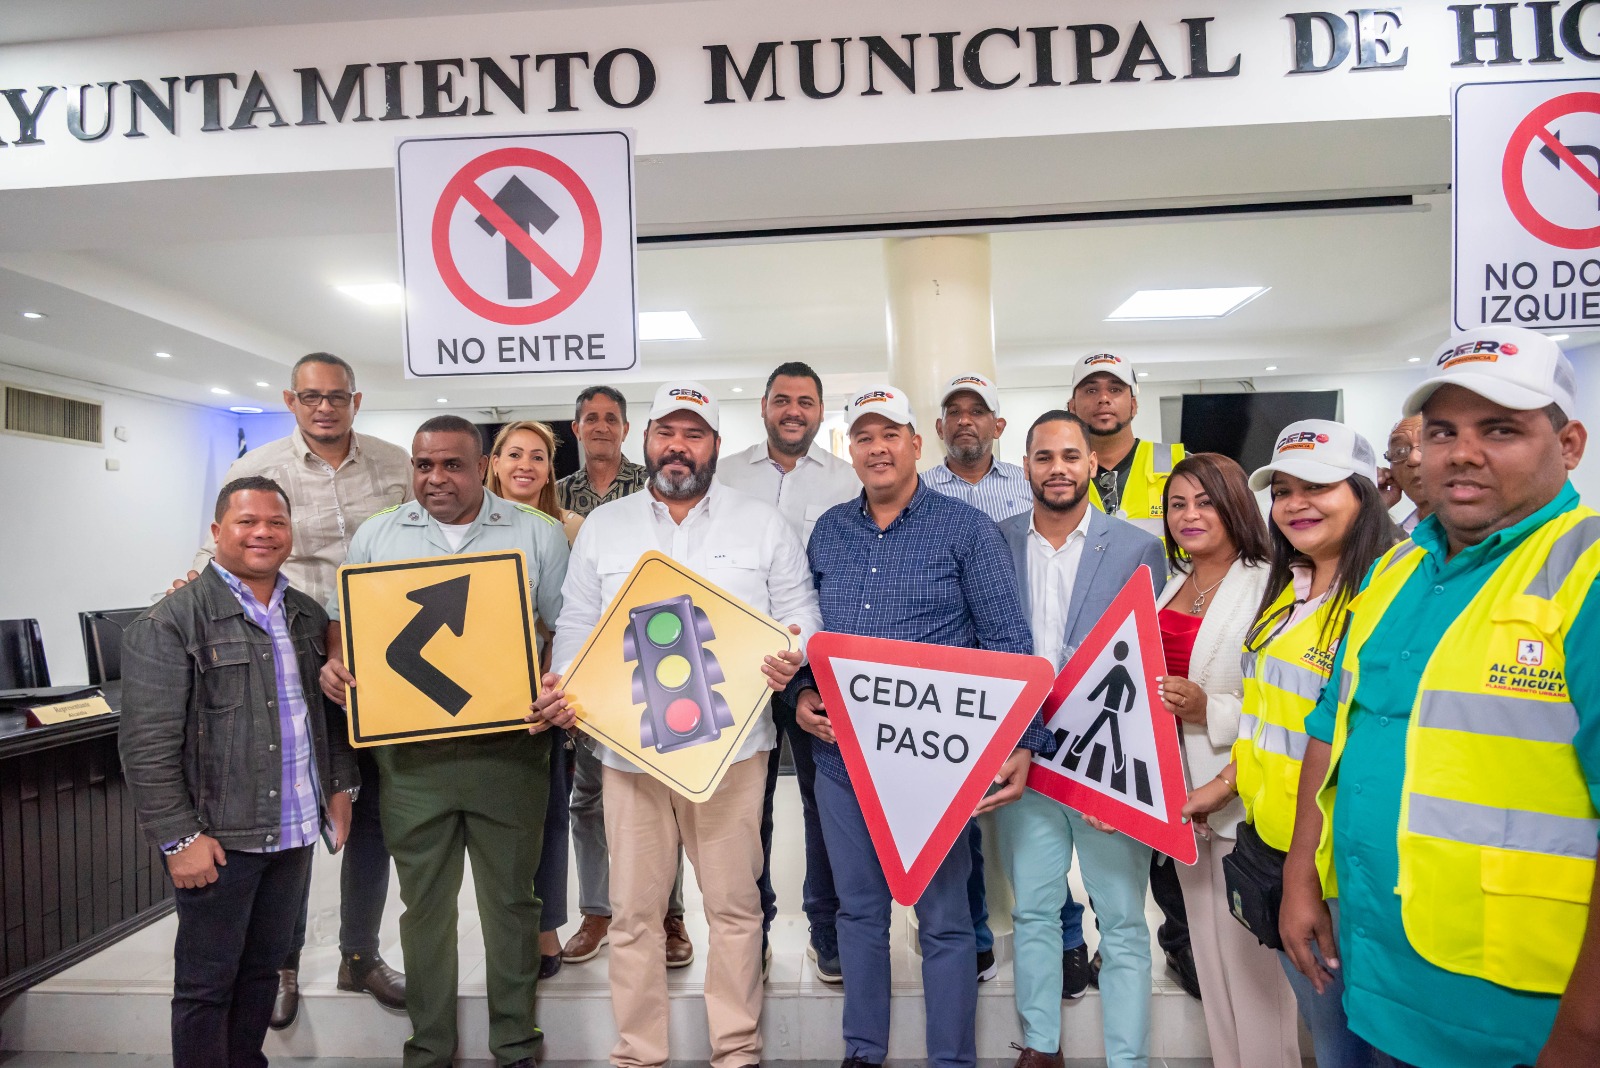 Alcaldía de Higüey lanza campaña educación vial “Cero Imprudencia”